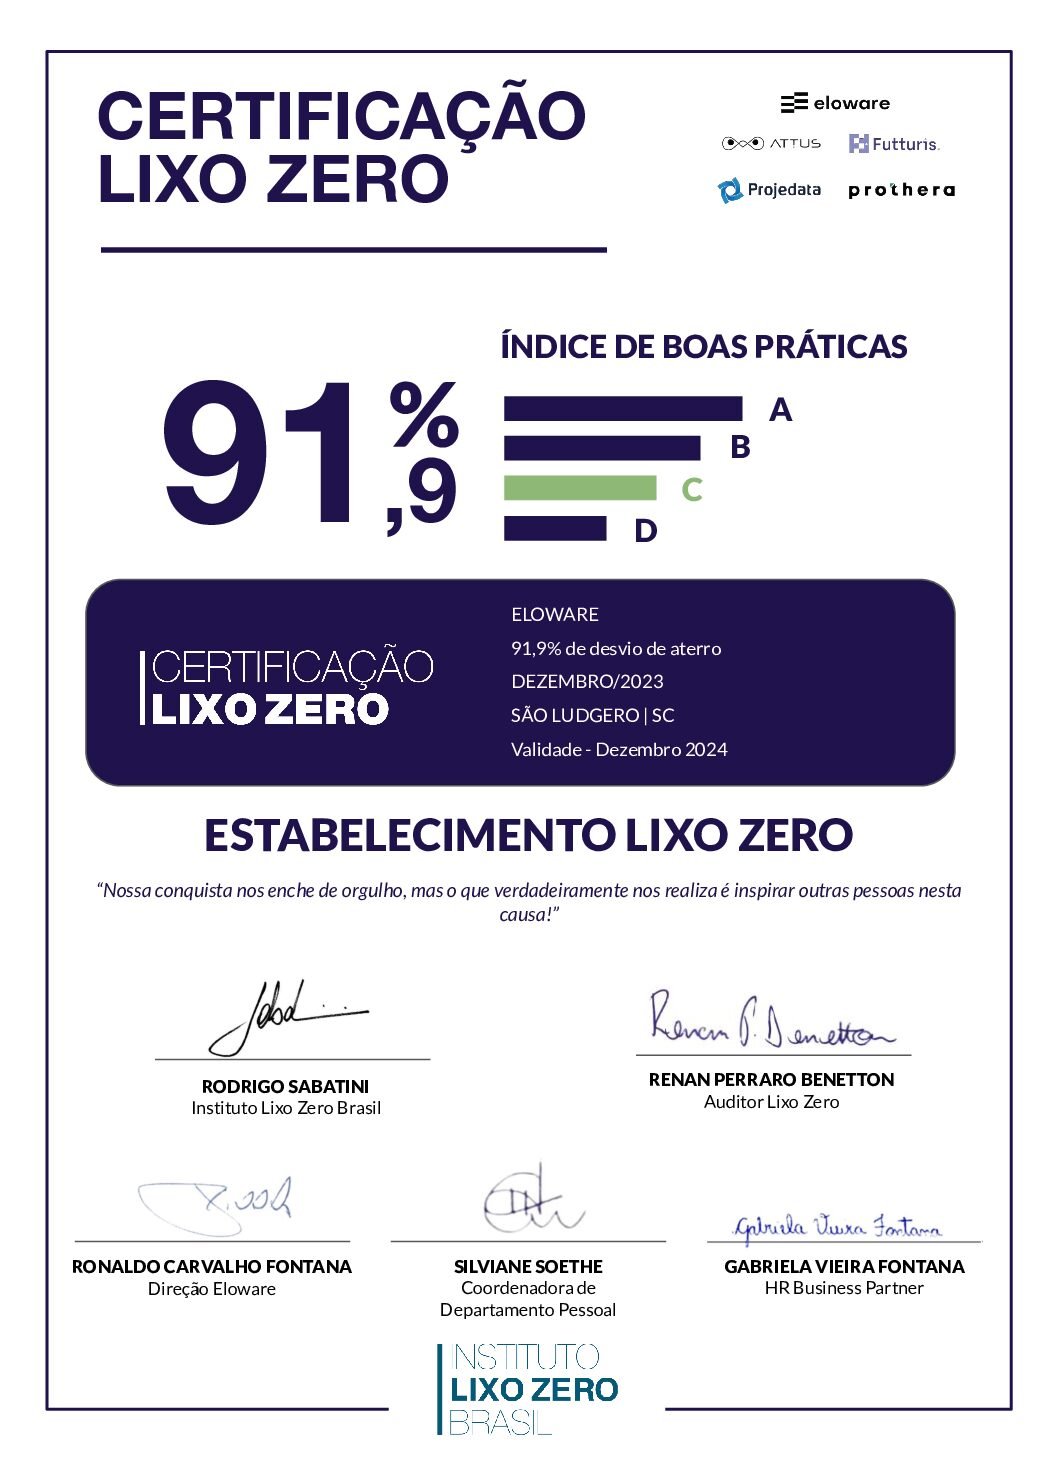 ASSINADO CertificaçãoLixoZero_ELOWARE_SC_Dezembro_2023